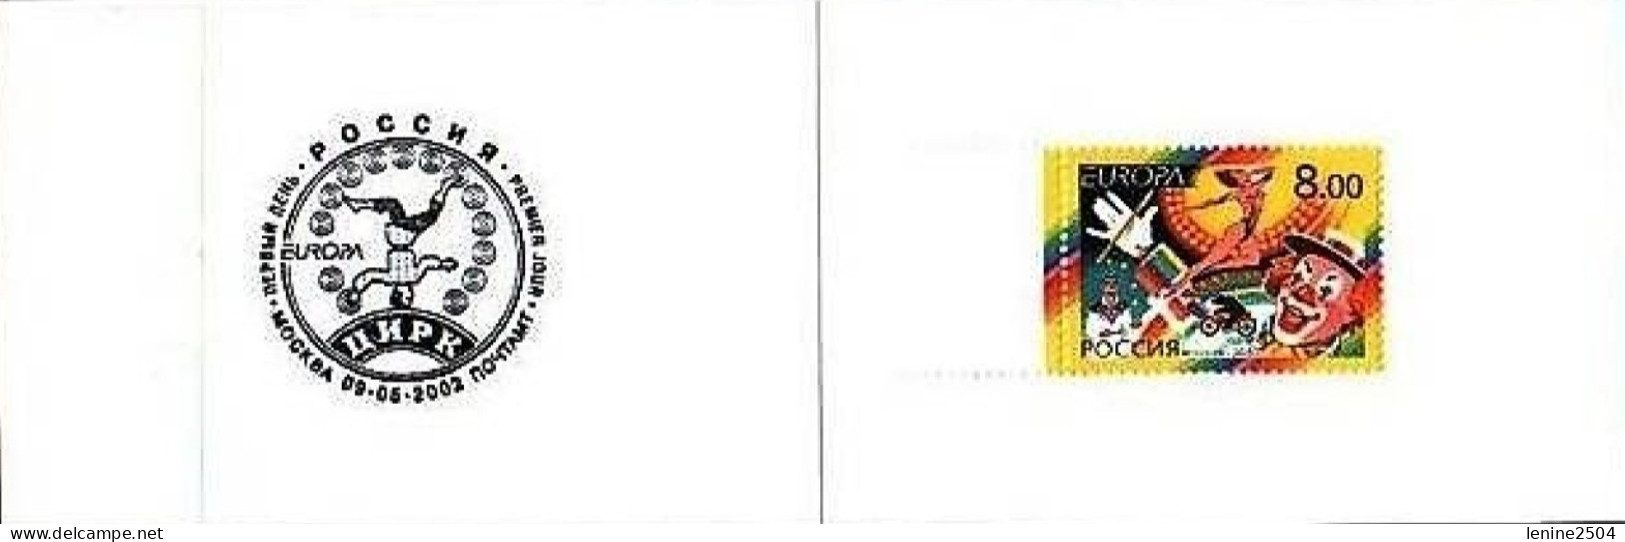 Russie 2002 Yvert N° 6632 ** Europa Cirque Emission 1er Jour Carnet Prestige Folder Booklet. - Unused Stamps